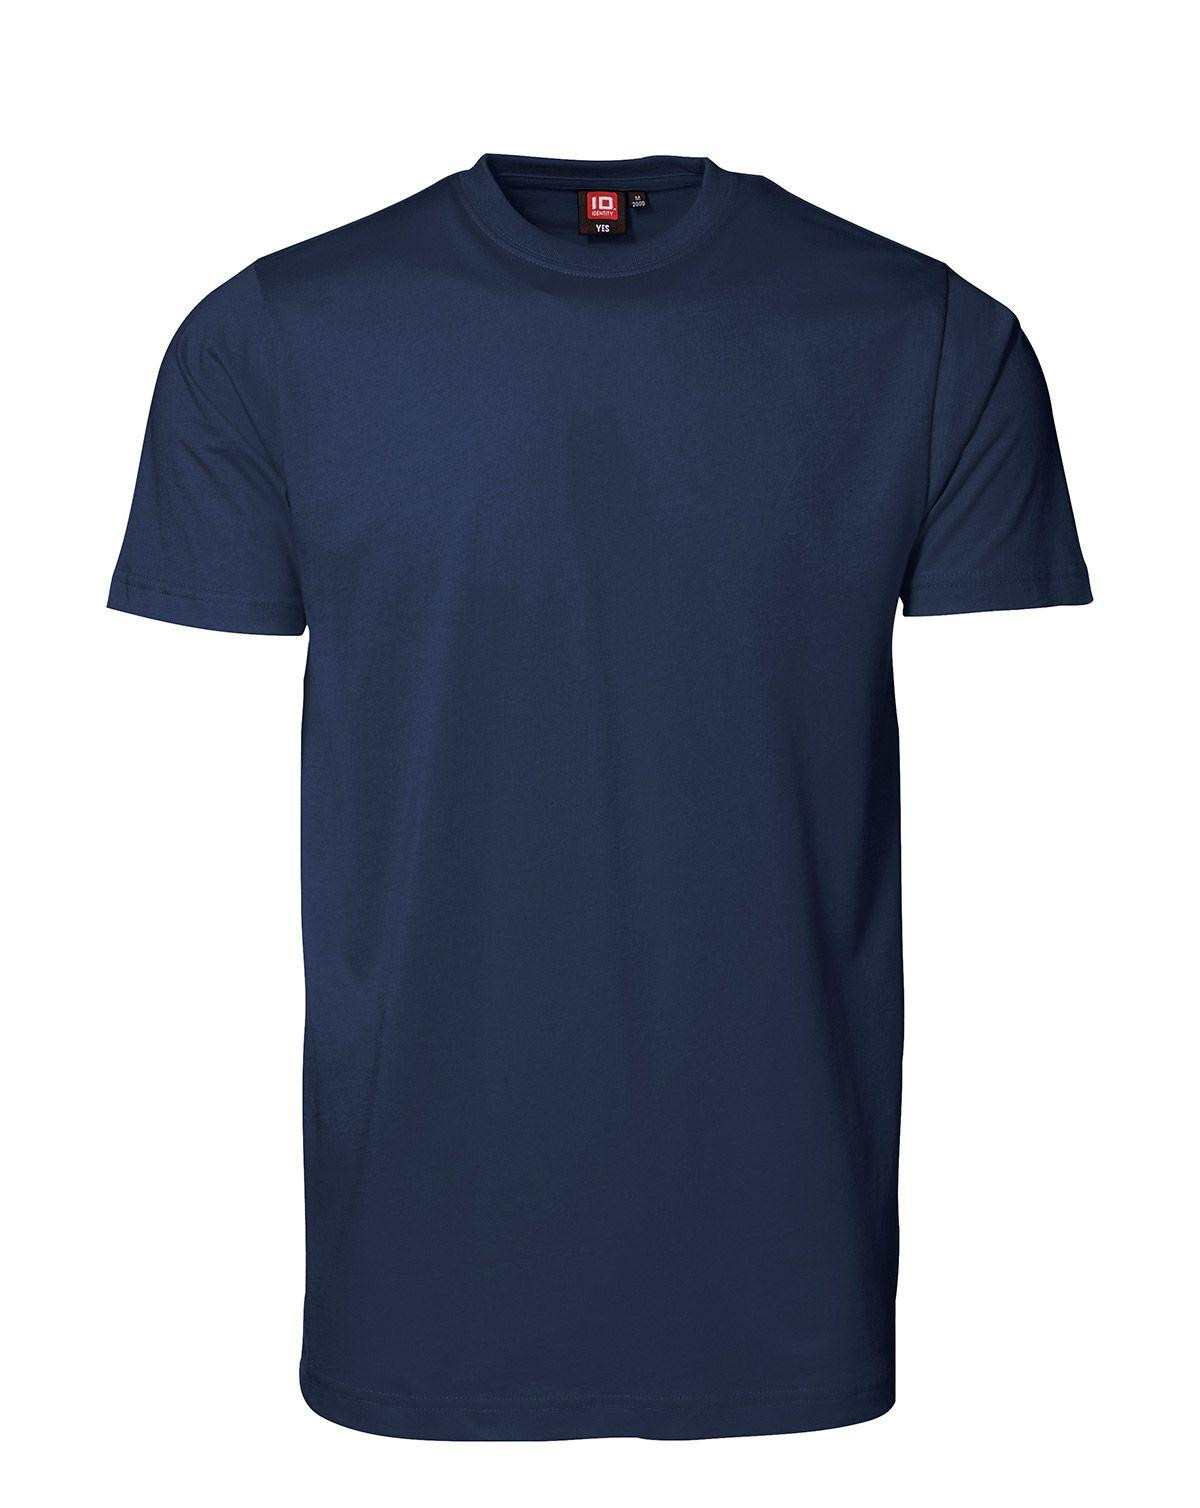 ID YES T-shirt (Navy, 2XL)